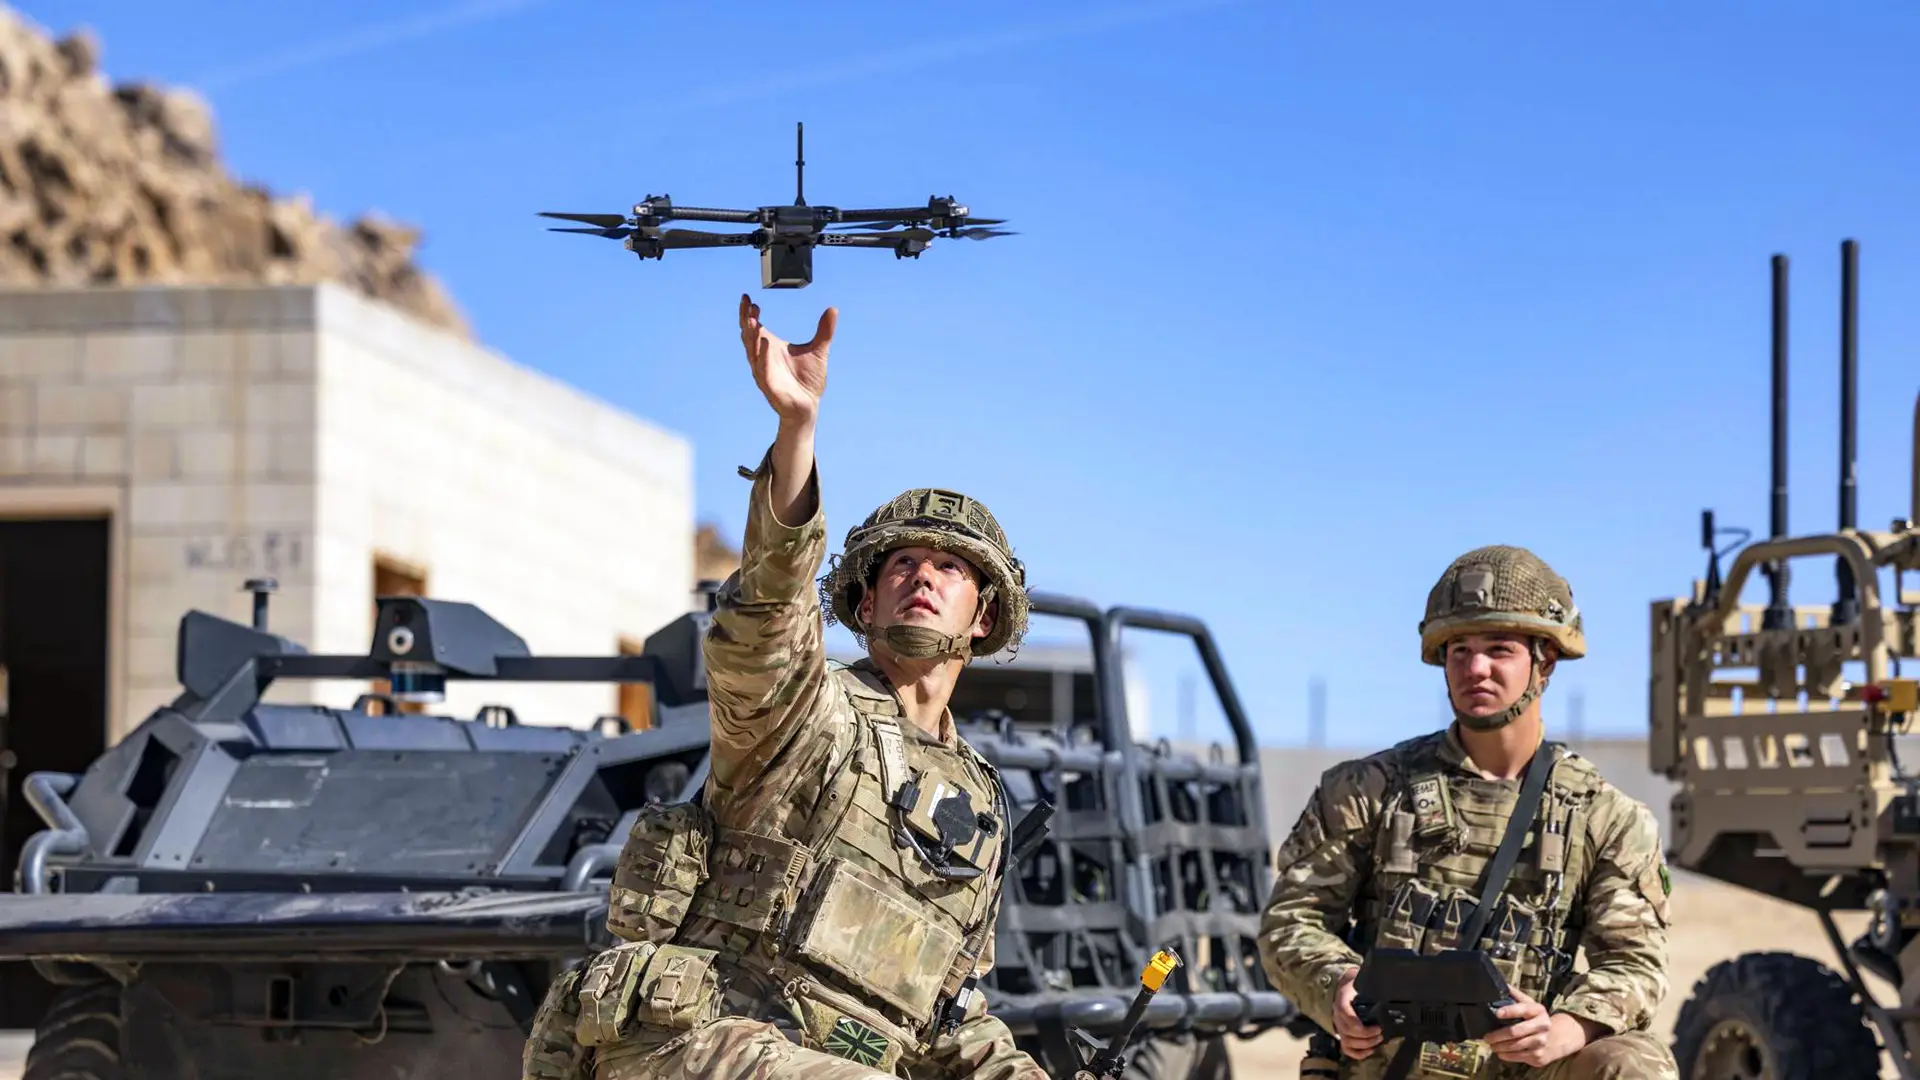 L'armée américaine dispose d'un nouveau drone RQ-28A basé sur le Skydio X2D.